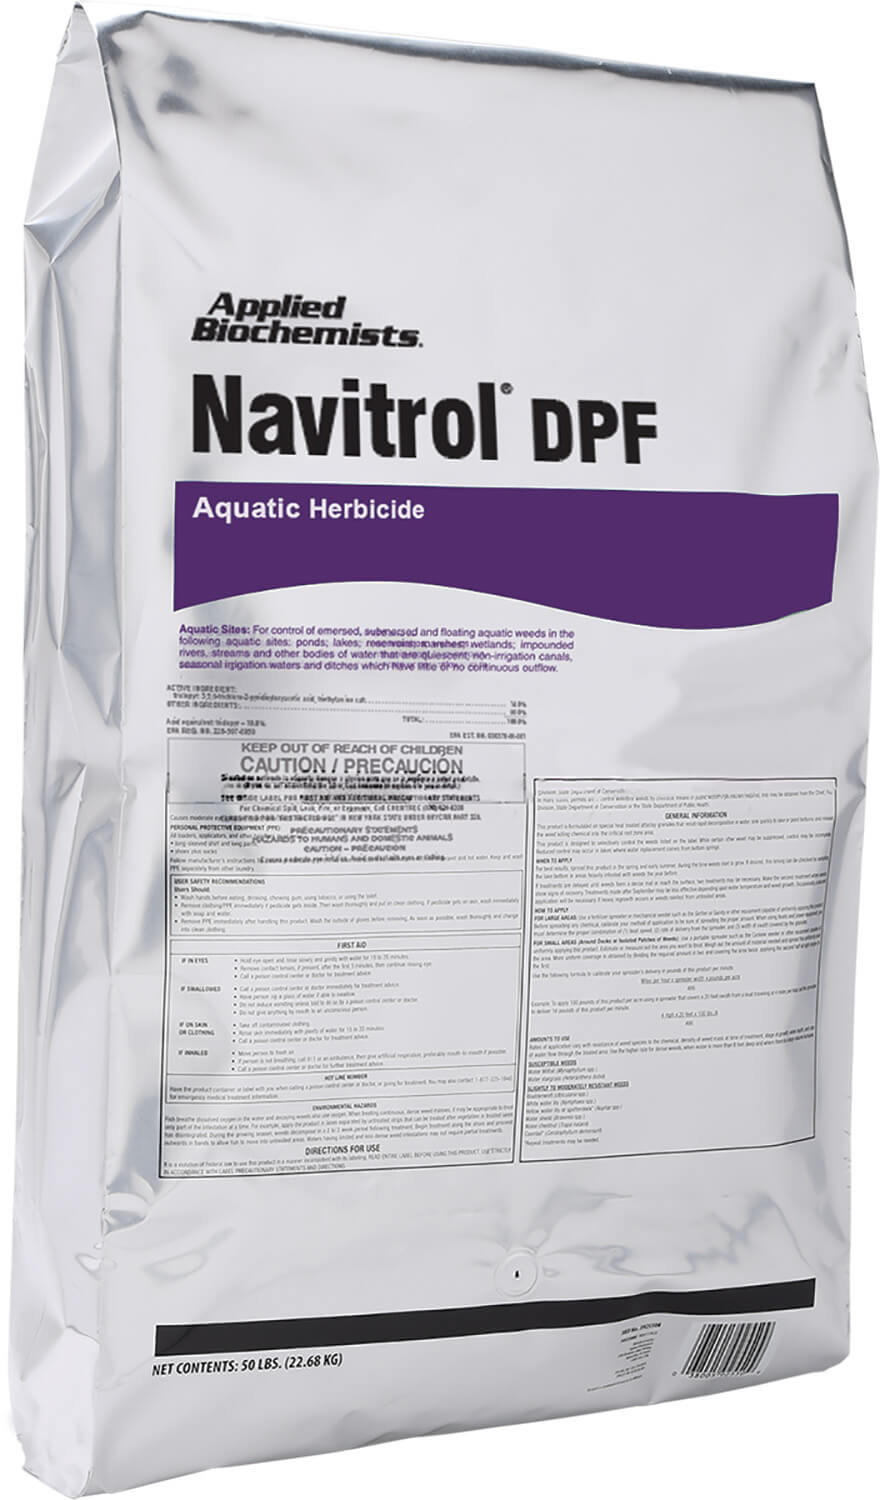 Navitrol DPF Granular Aquatic Herbicide – 50 lbs bag